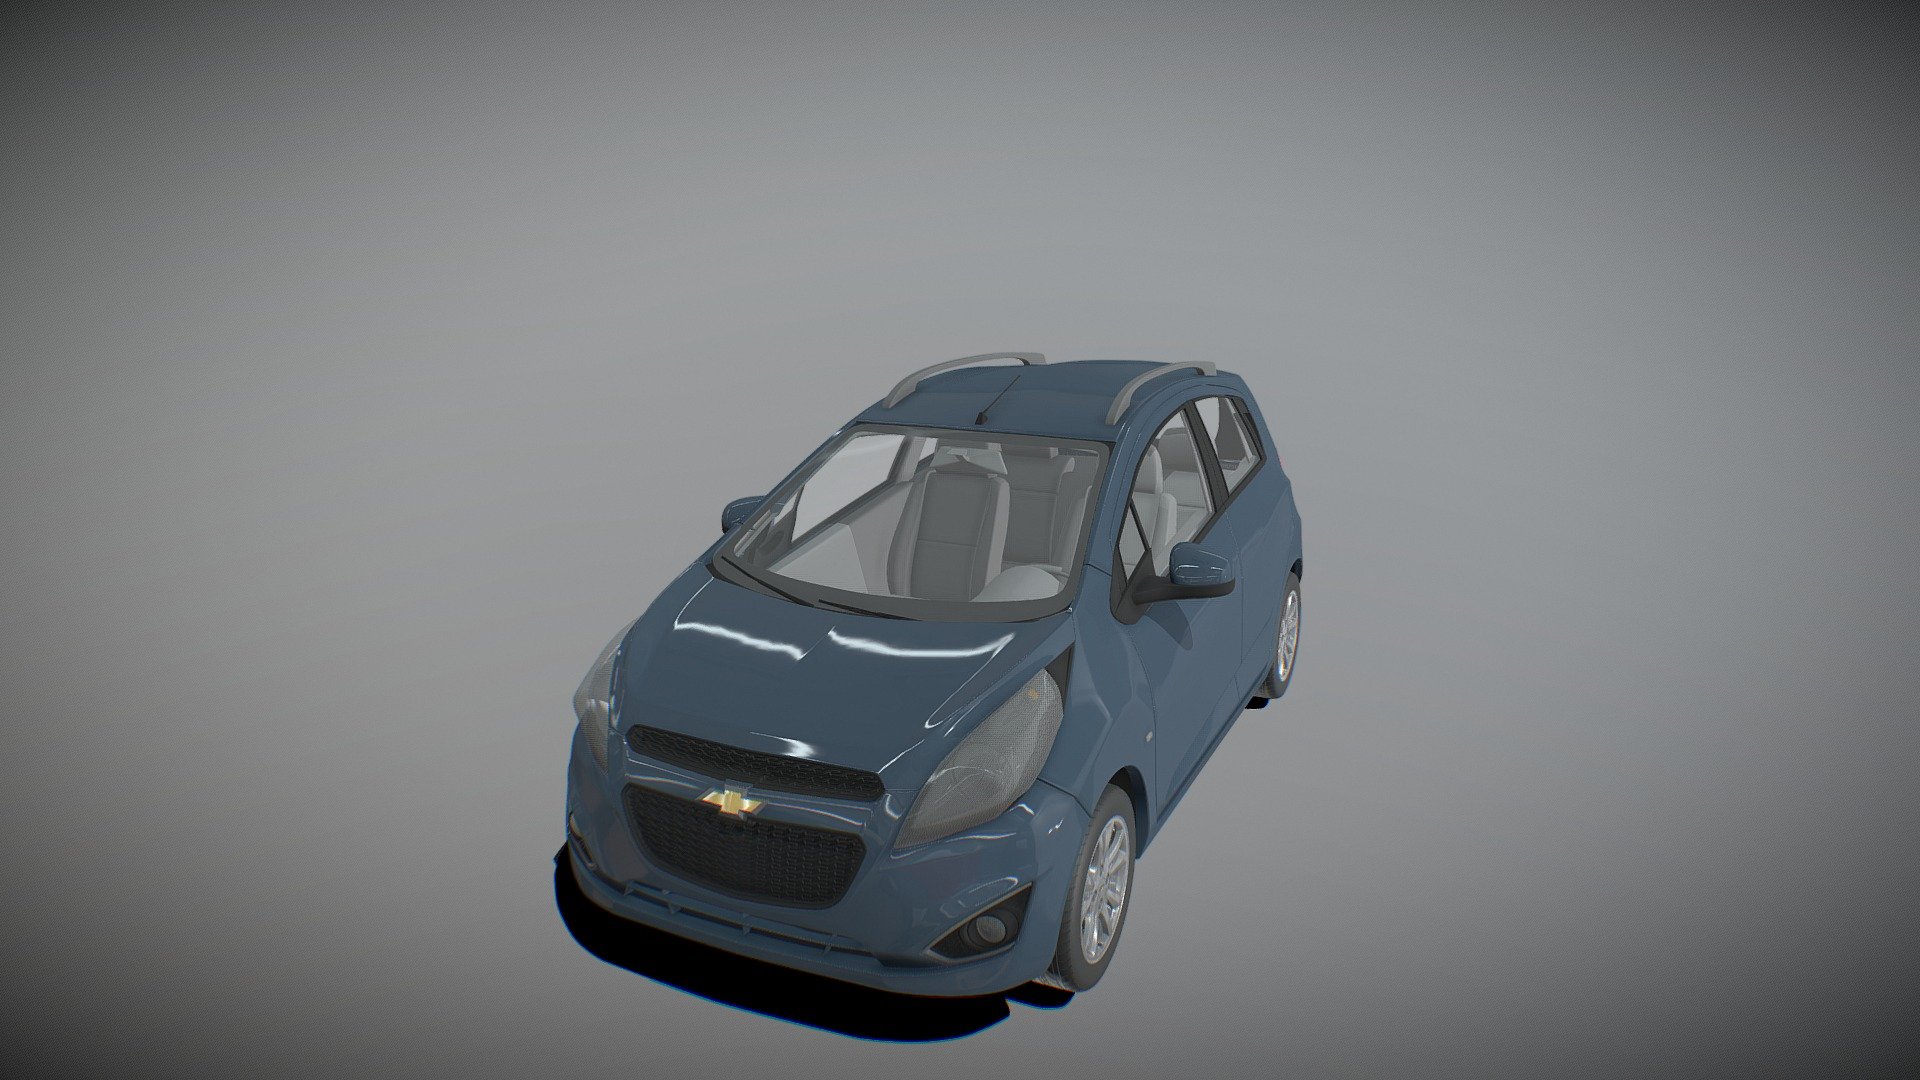 test de materiales - Chevrolet_Spark_test - 3D model by ener64 (@og141896) 3d model